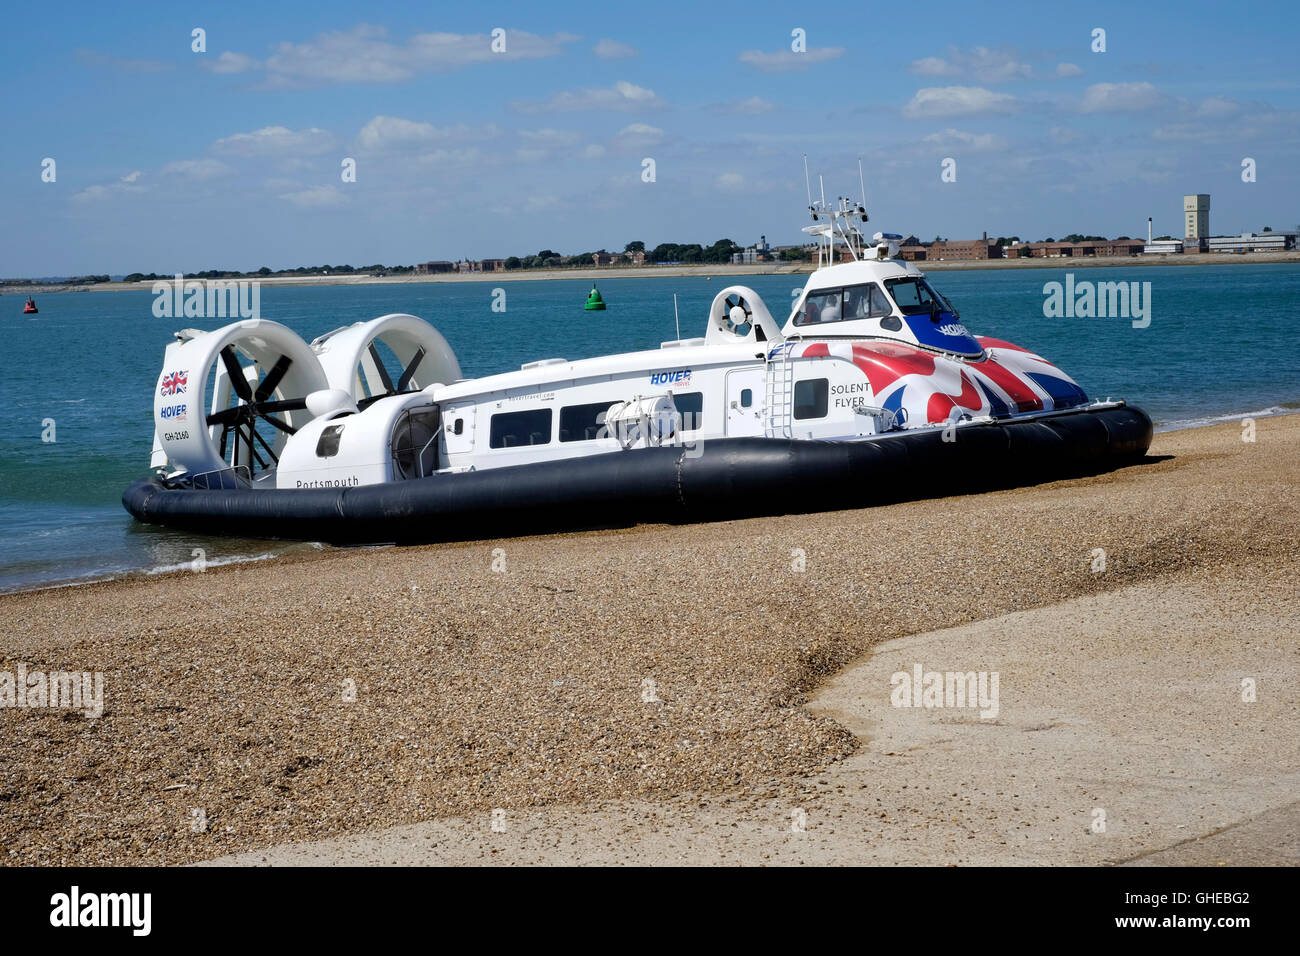 Nuevo folleto solent hovertravel hovercraft sometidos a pruebas de mar off southsea terminal Inglaterra Foto de stock